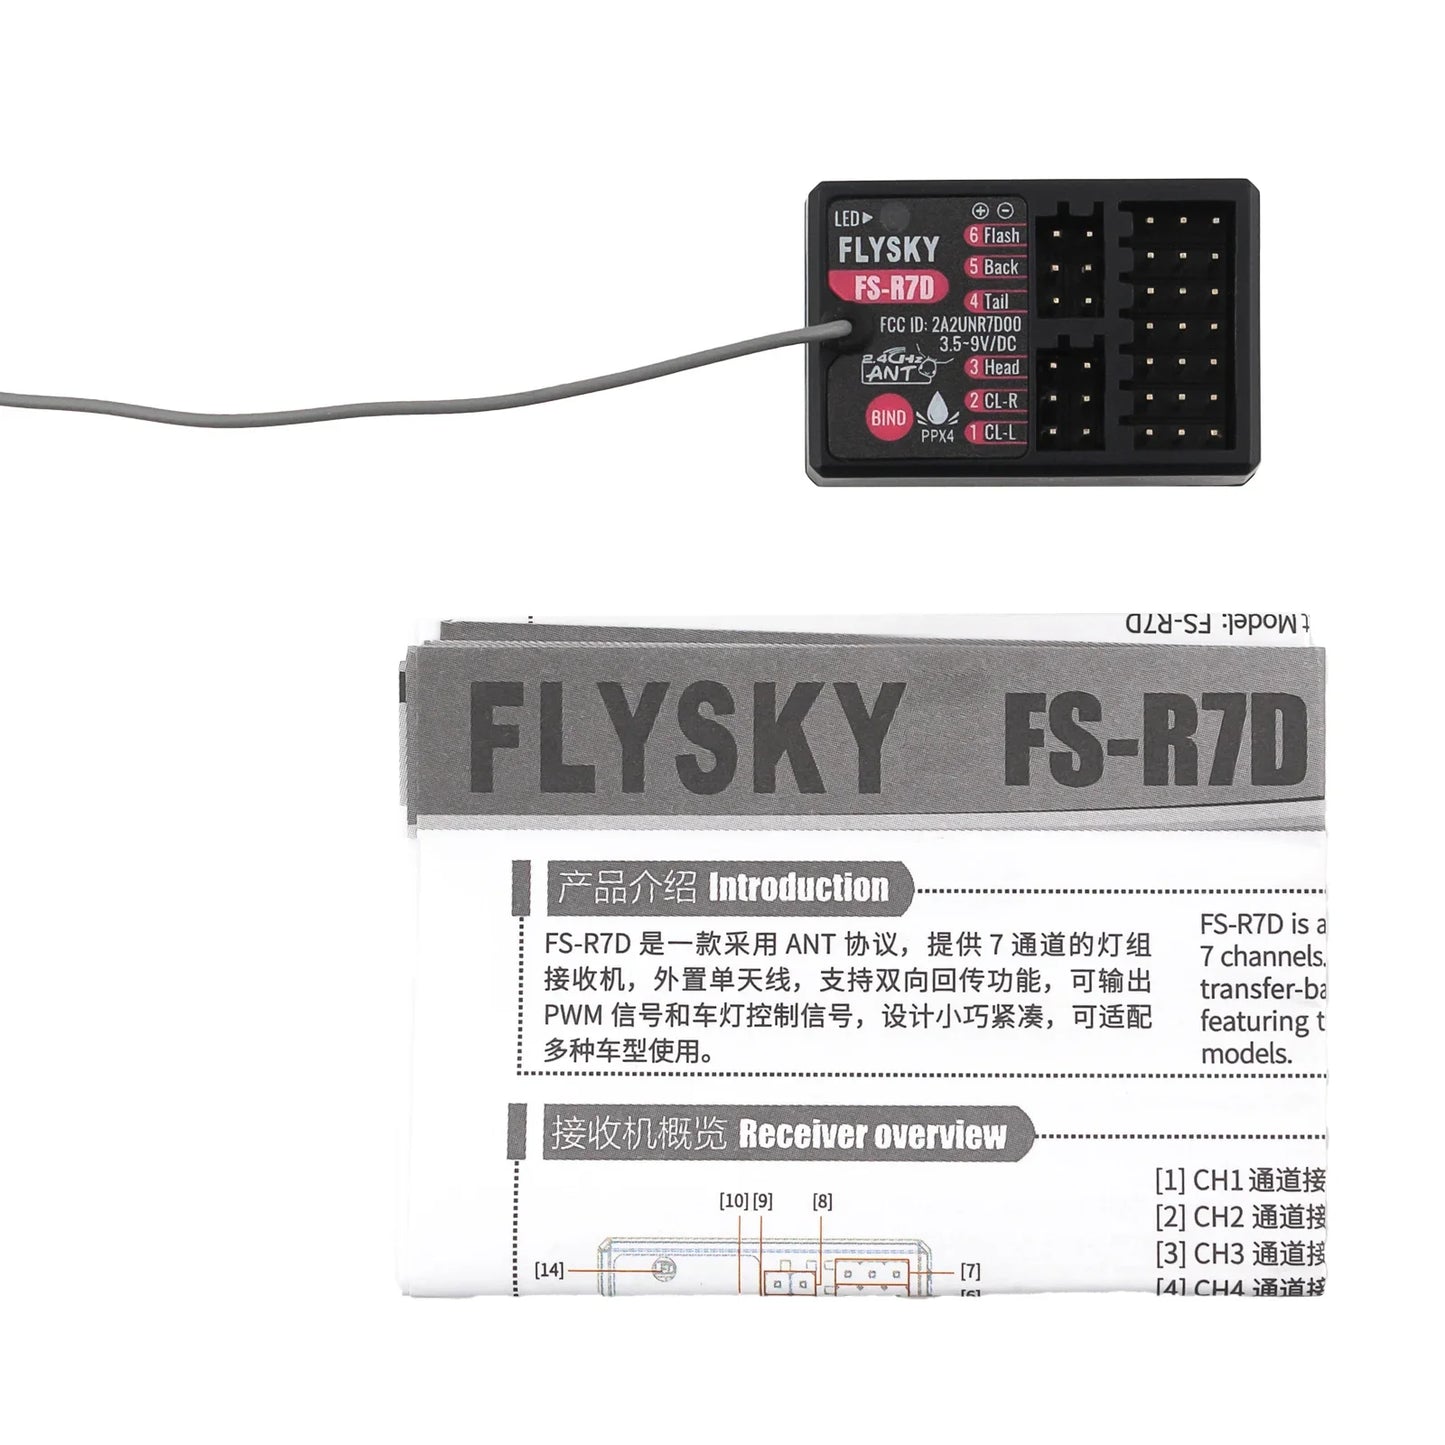 FLYSKY FS-R7D 12532N4 is a 